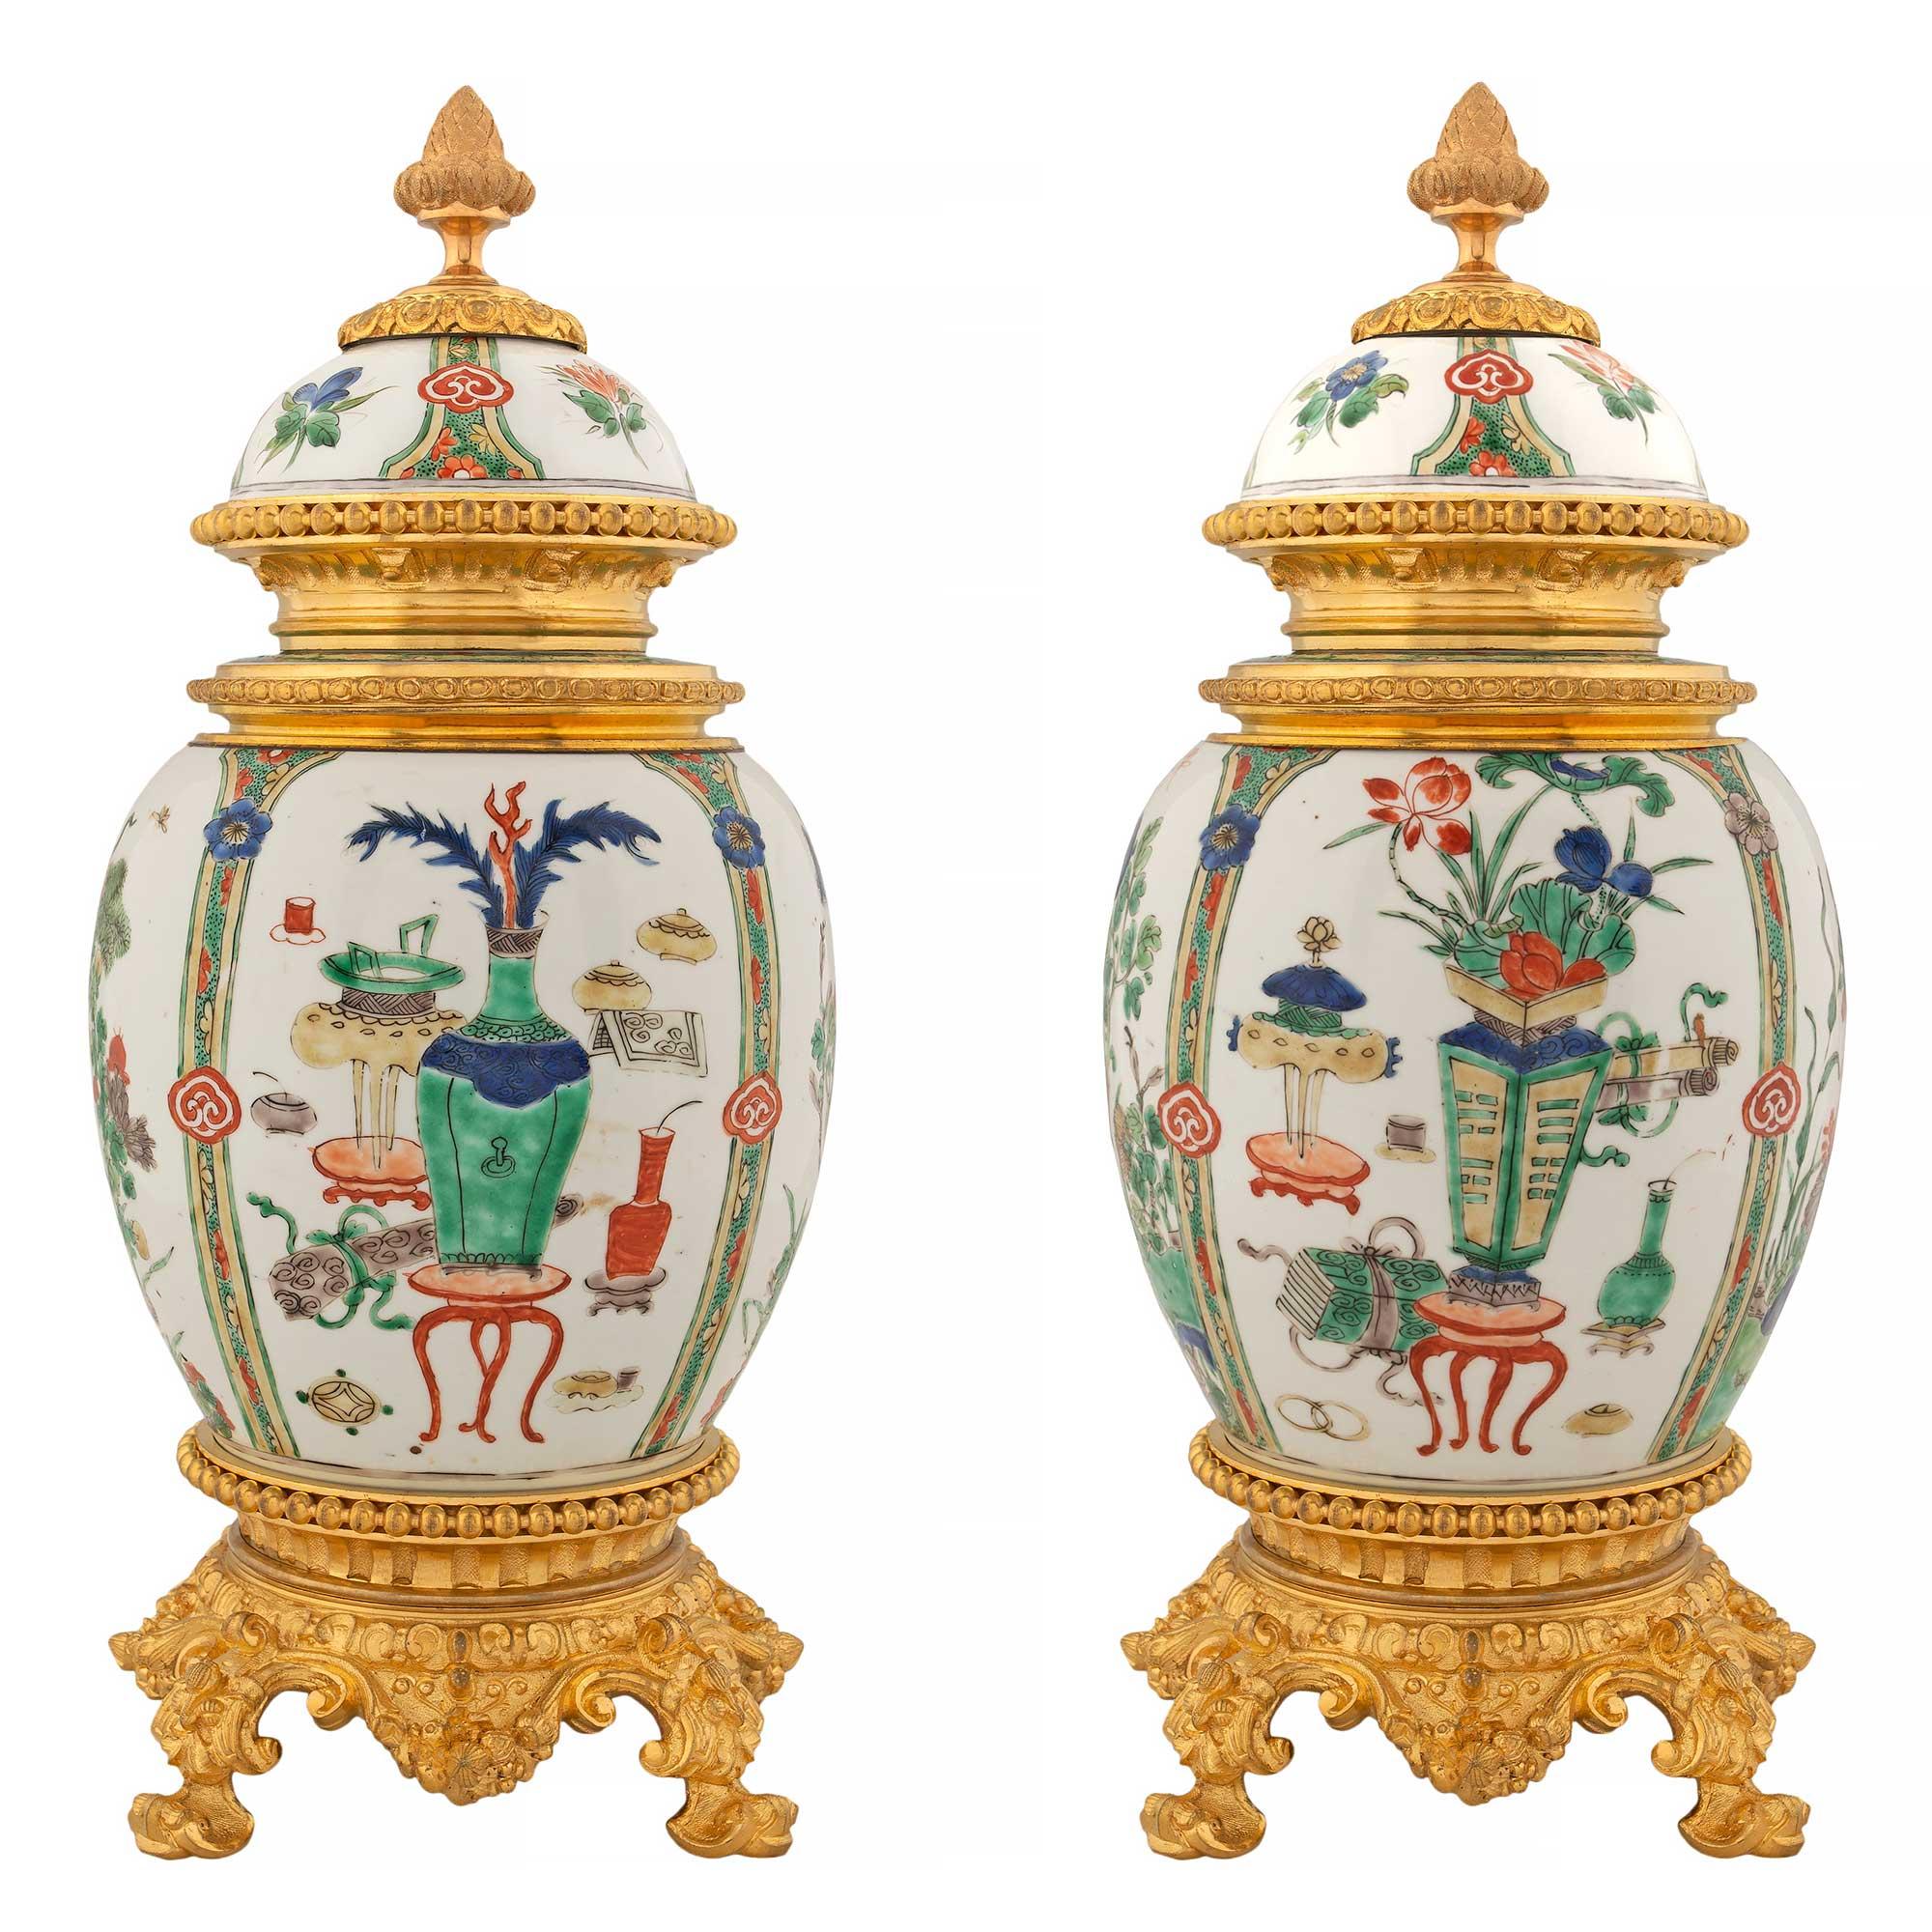 Französisch 19. Jahrhundert Louis XVI St. Goldbronze-Beschläge auf chinesischen Export-Porzellanurnen